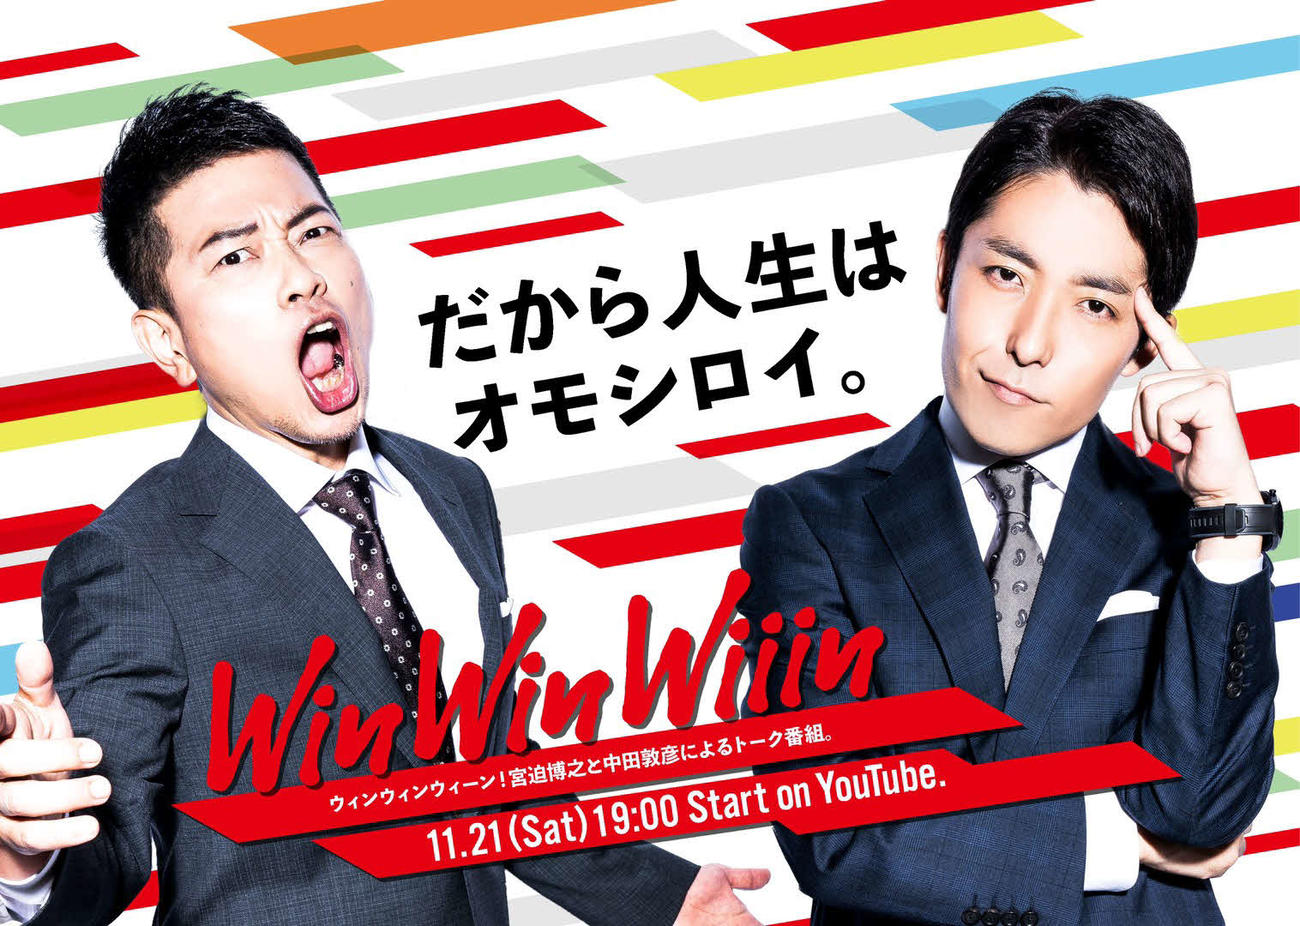 宮迫博之（左）と中田敦彦がYouTubeで21日に立ち上げる新番組「WinWinWiiin」のロゴ